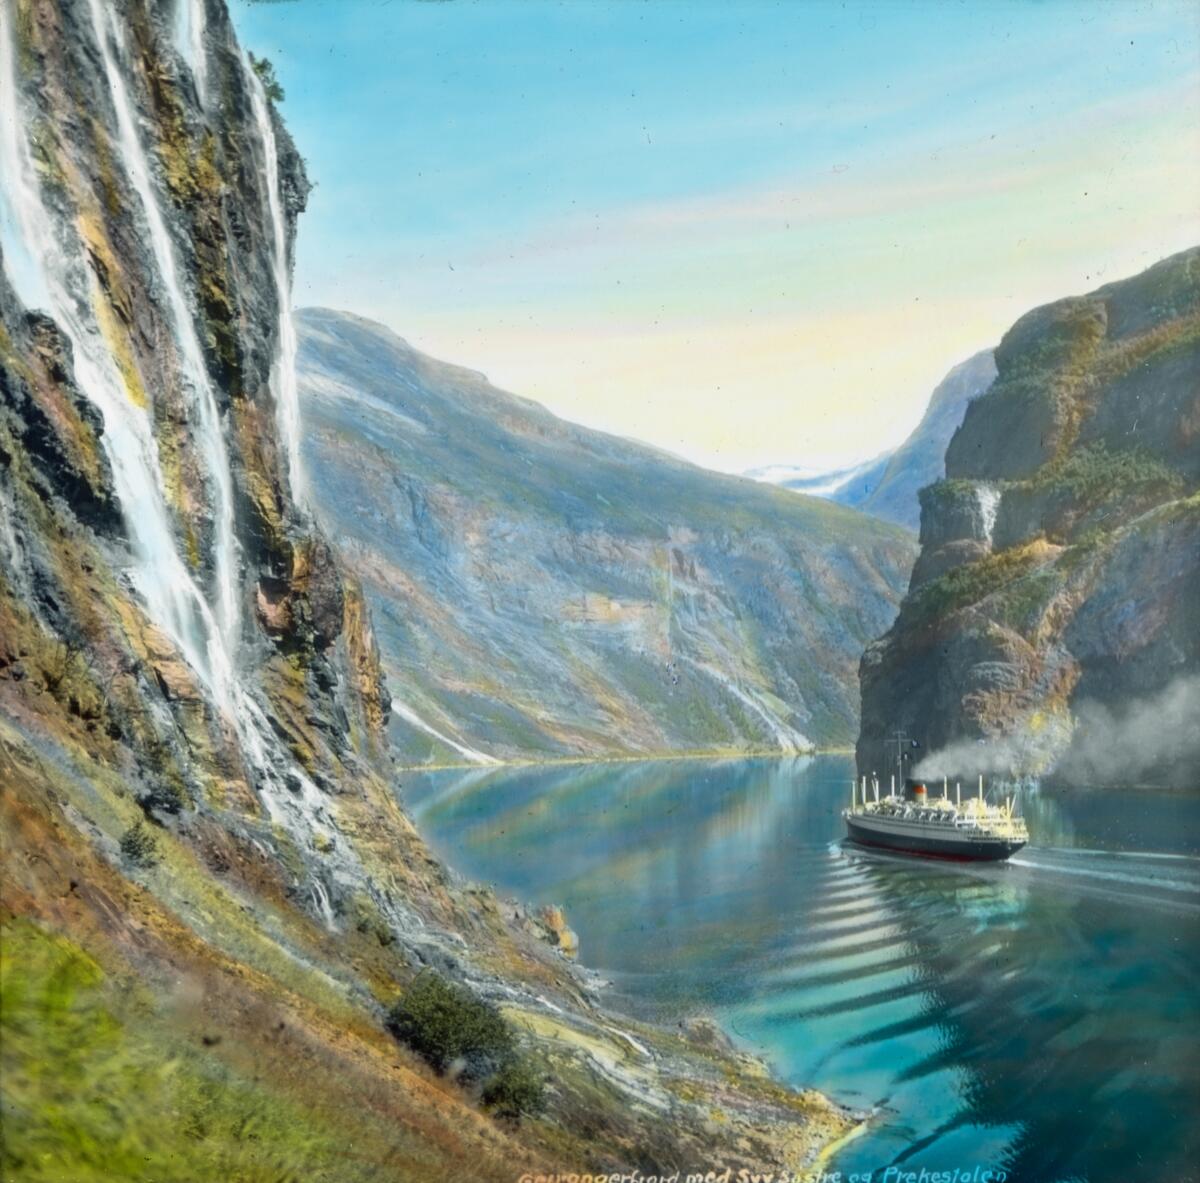 Håndkolorert dias. En passasjerskip er på vei innover Geirangerfjorden. Del av Wilses serie kalt "Når fjordene blåner". 